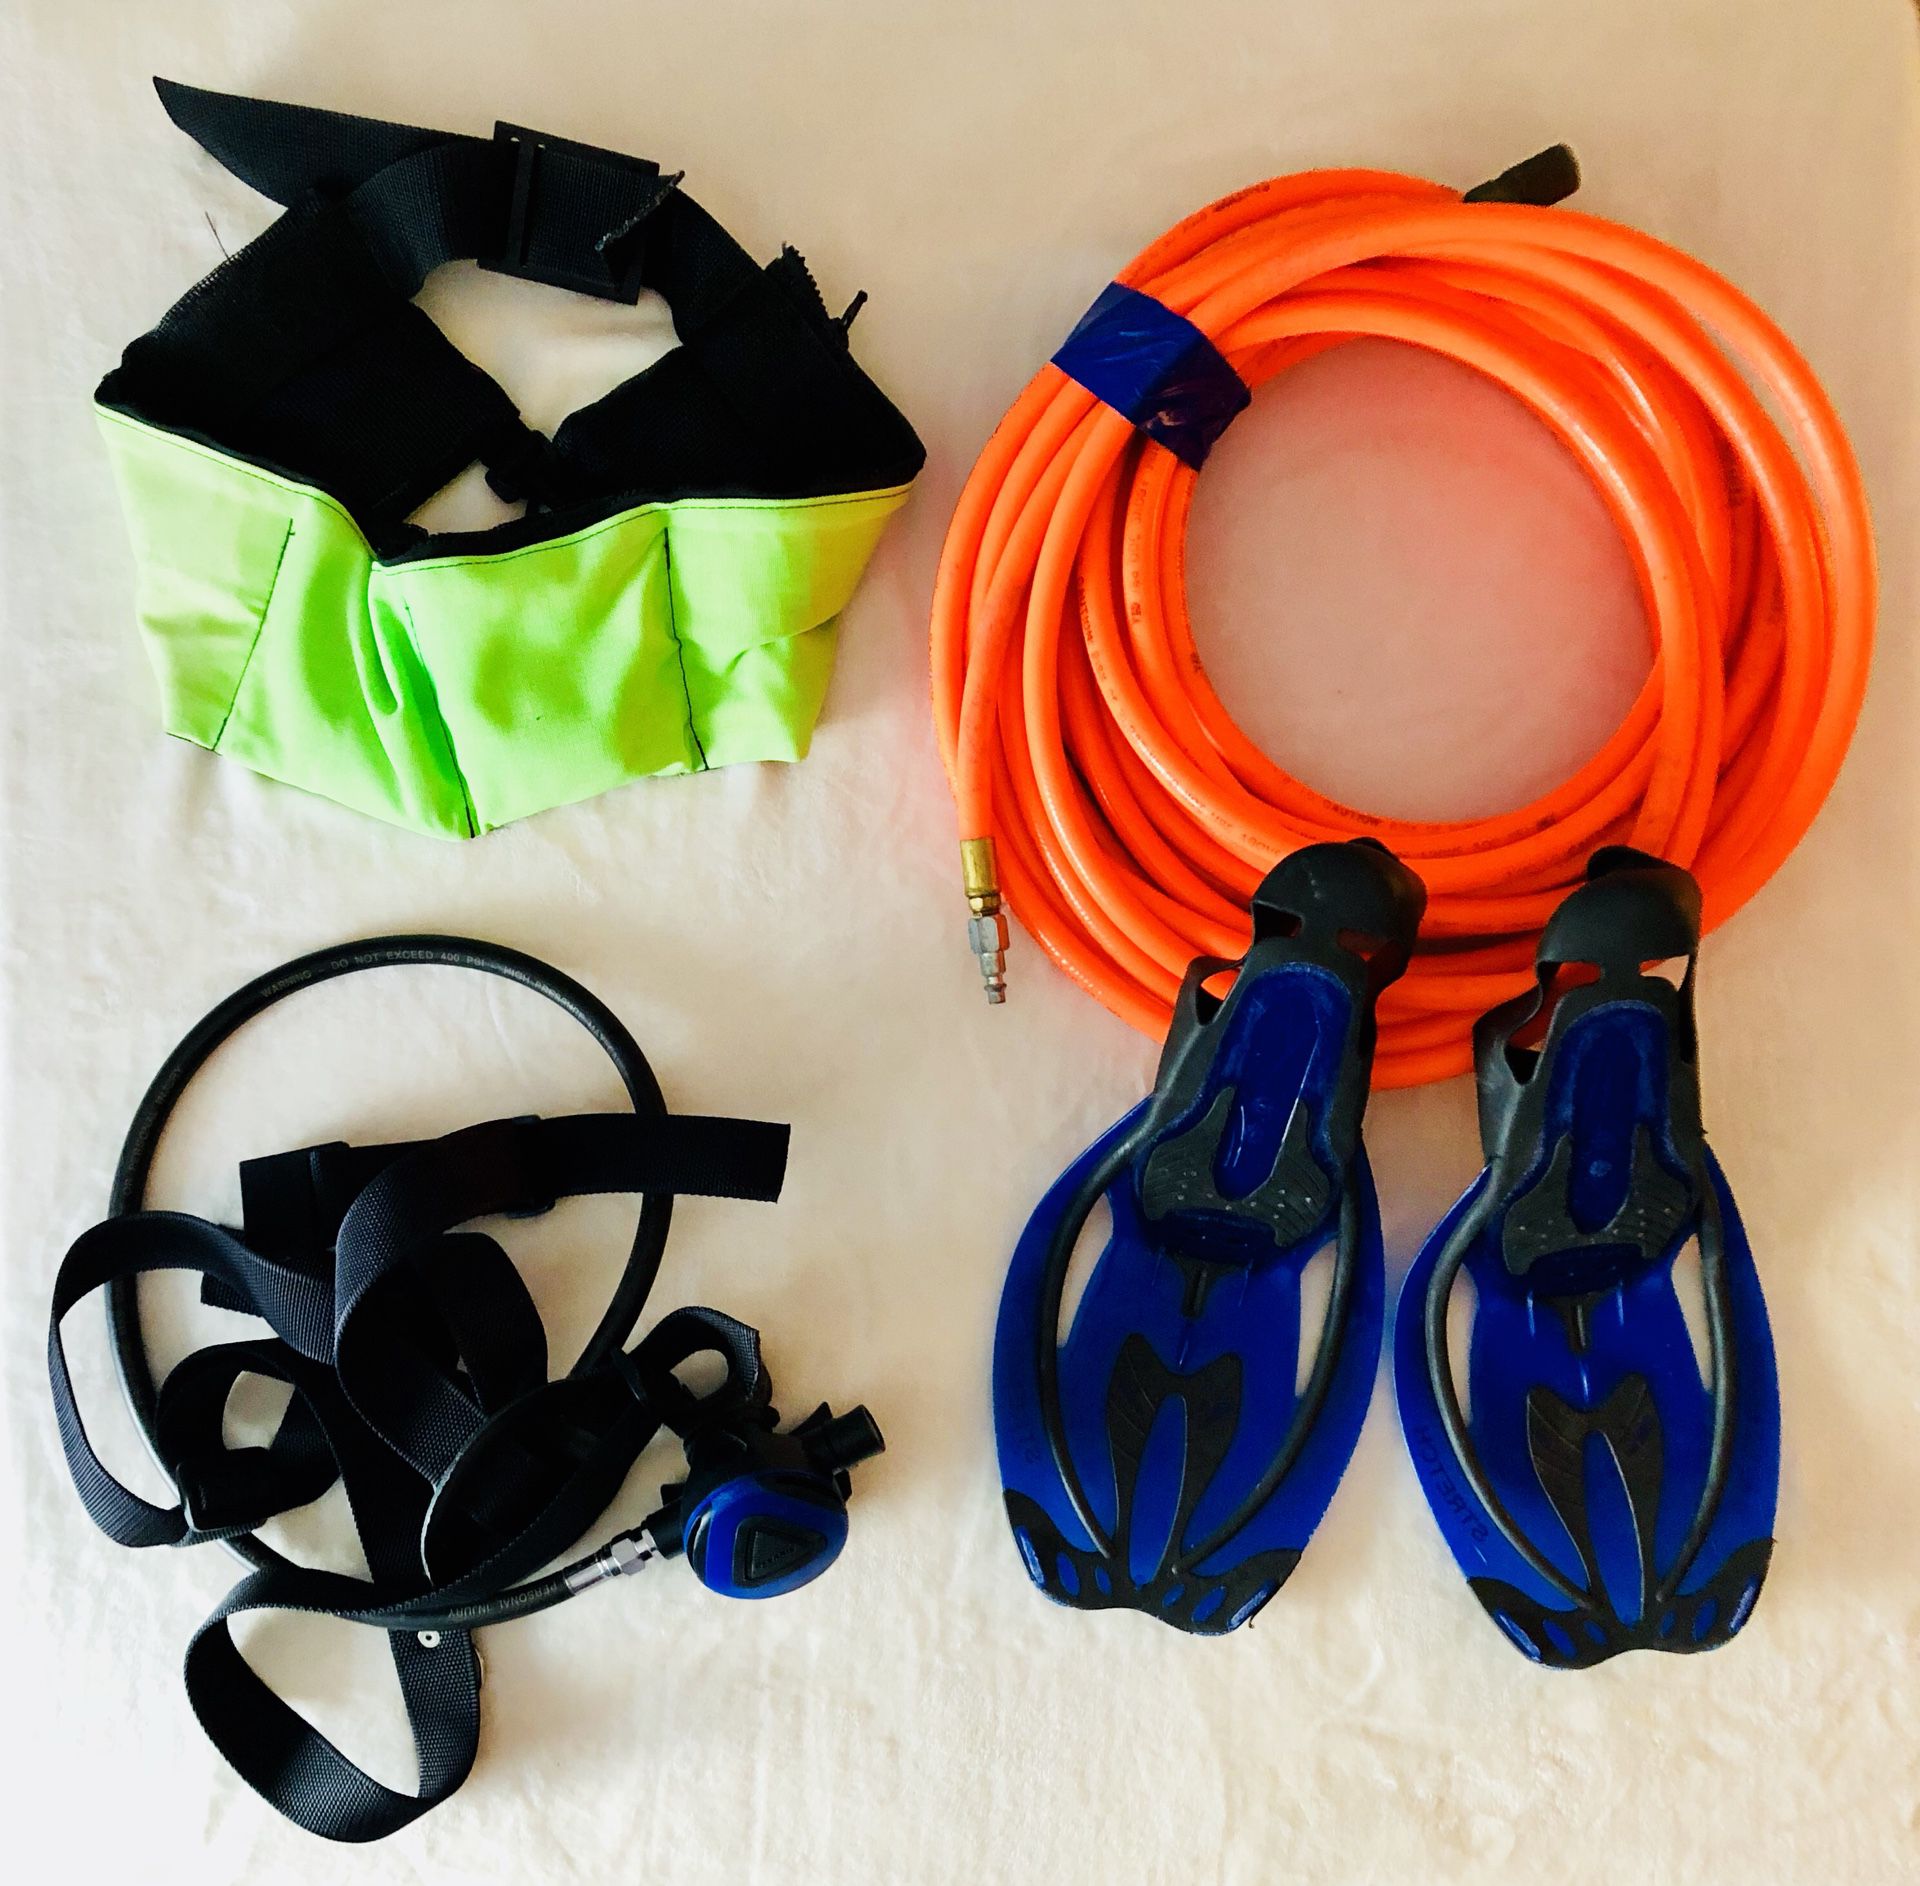 Diving Gear: Respirator, Air Hose, 12lb Weight Belt, Swim Fins